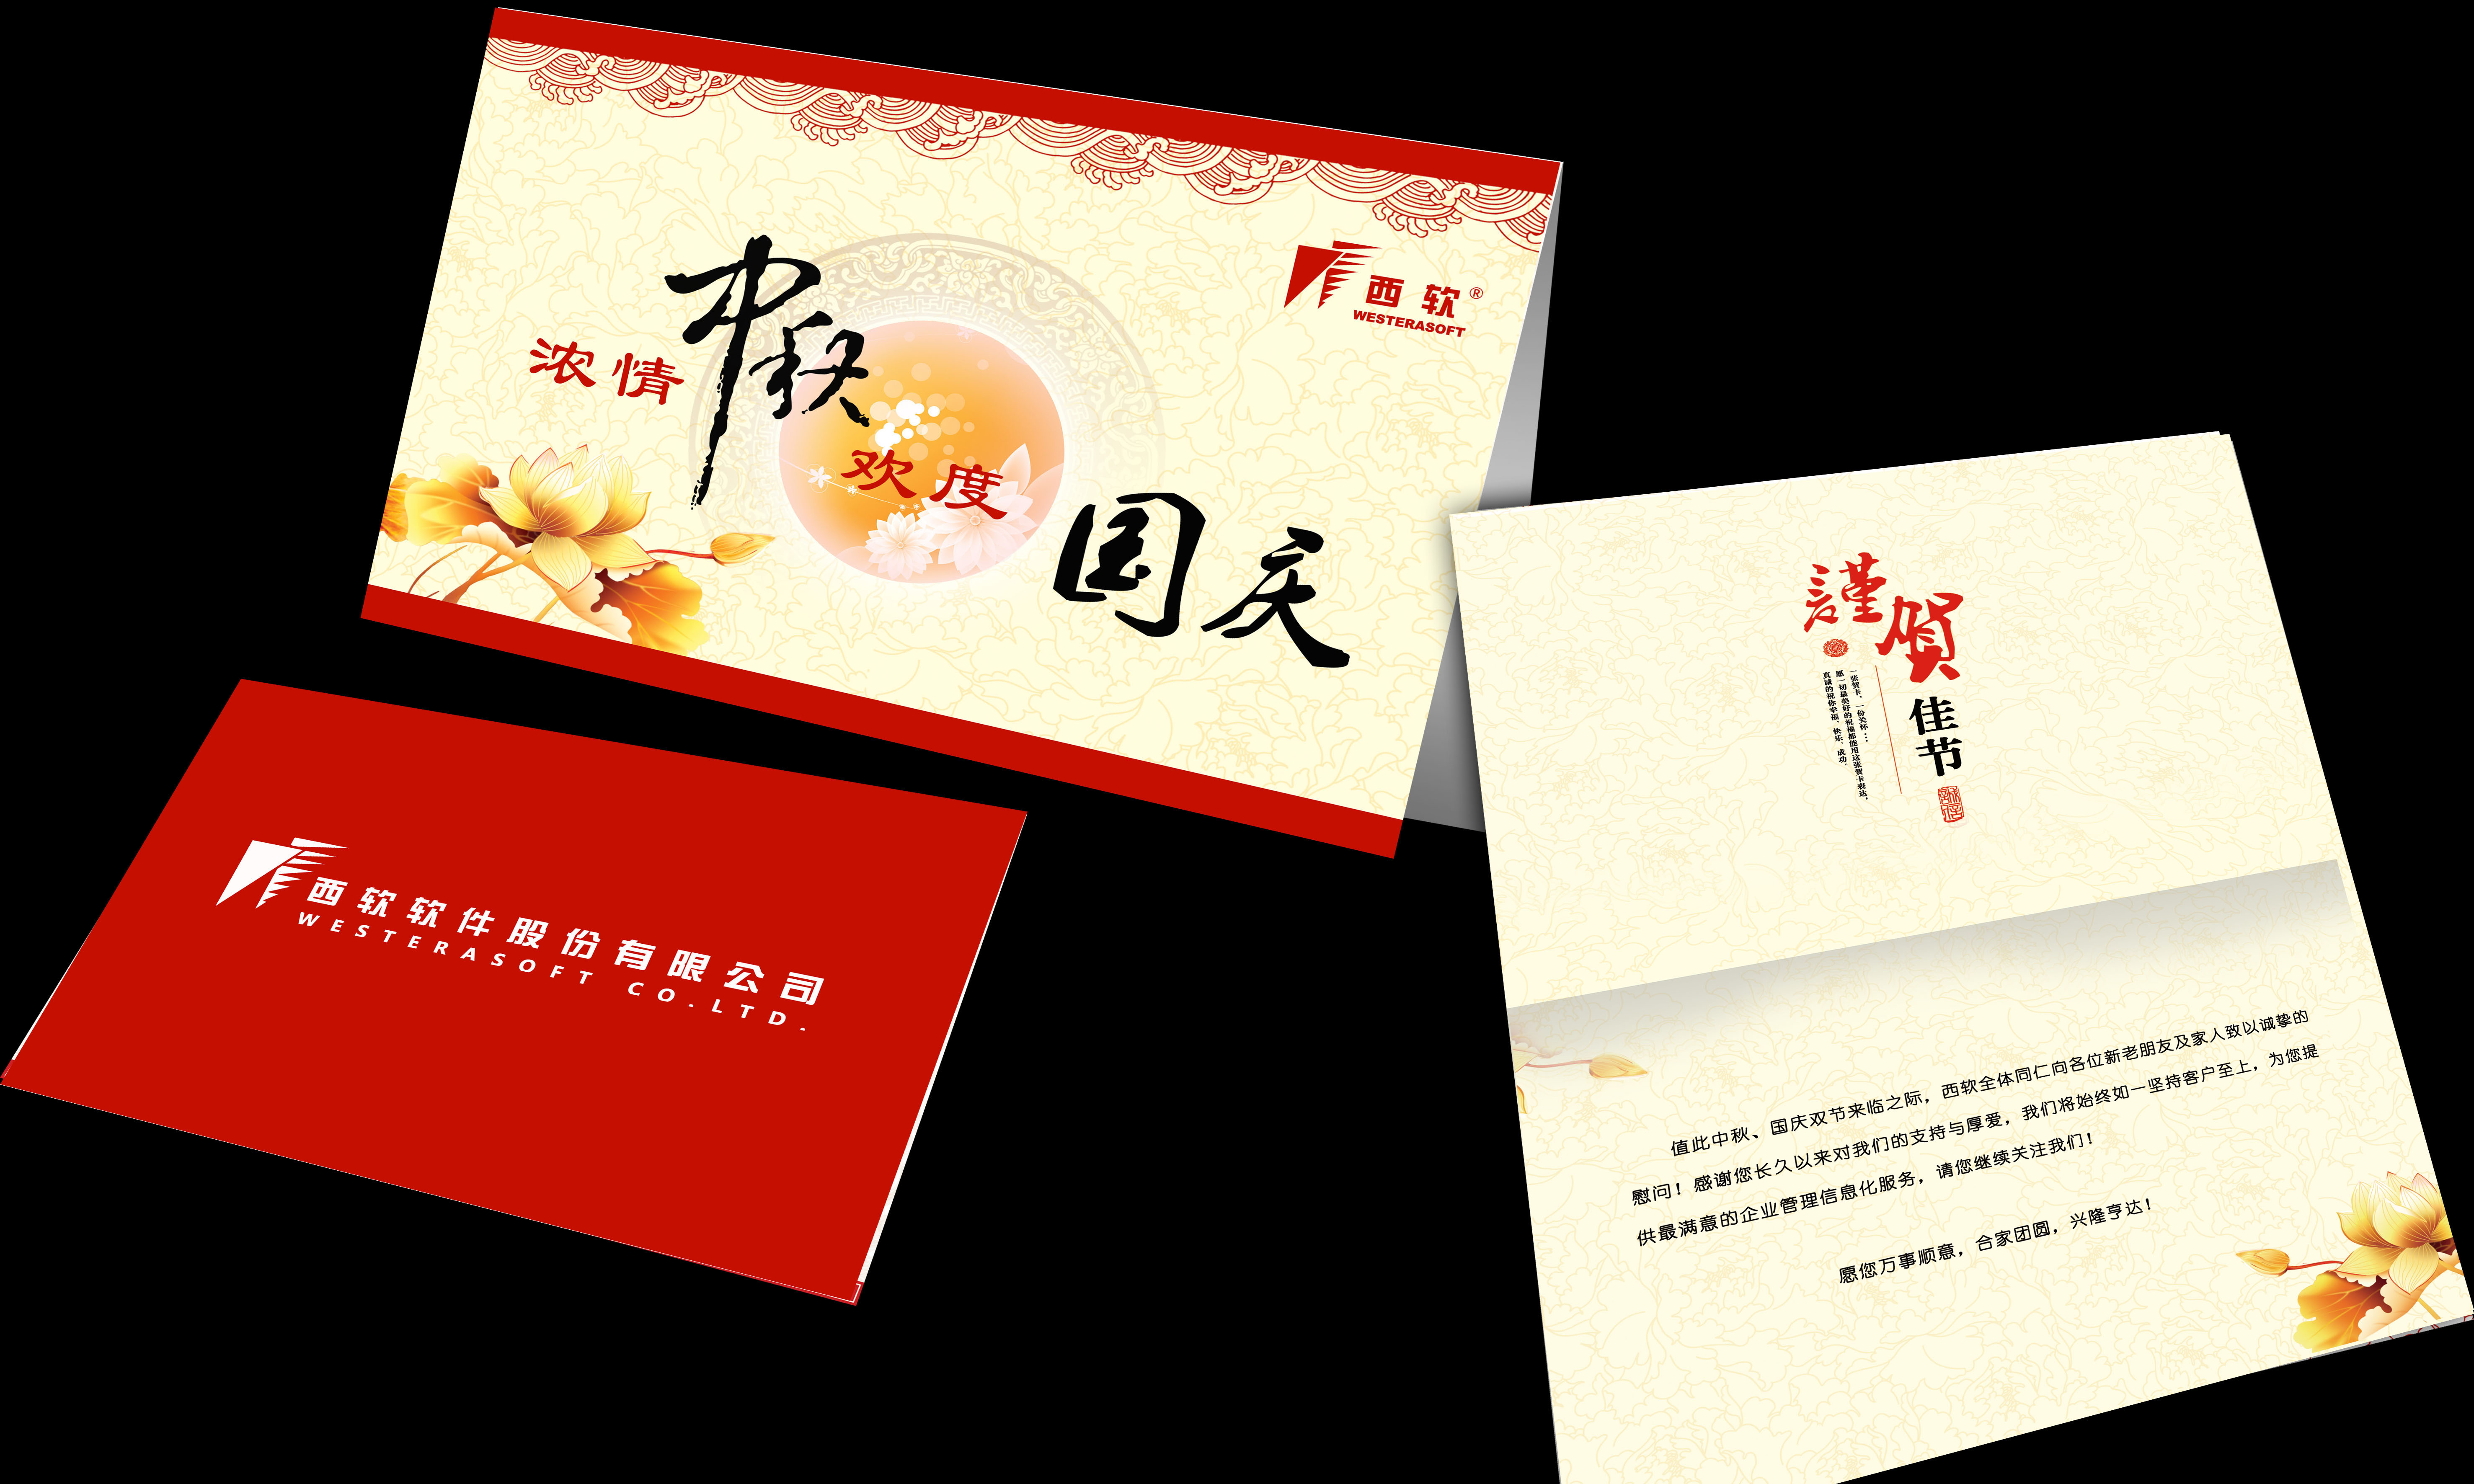 中秋节,公司给客户寄去的贺卡